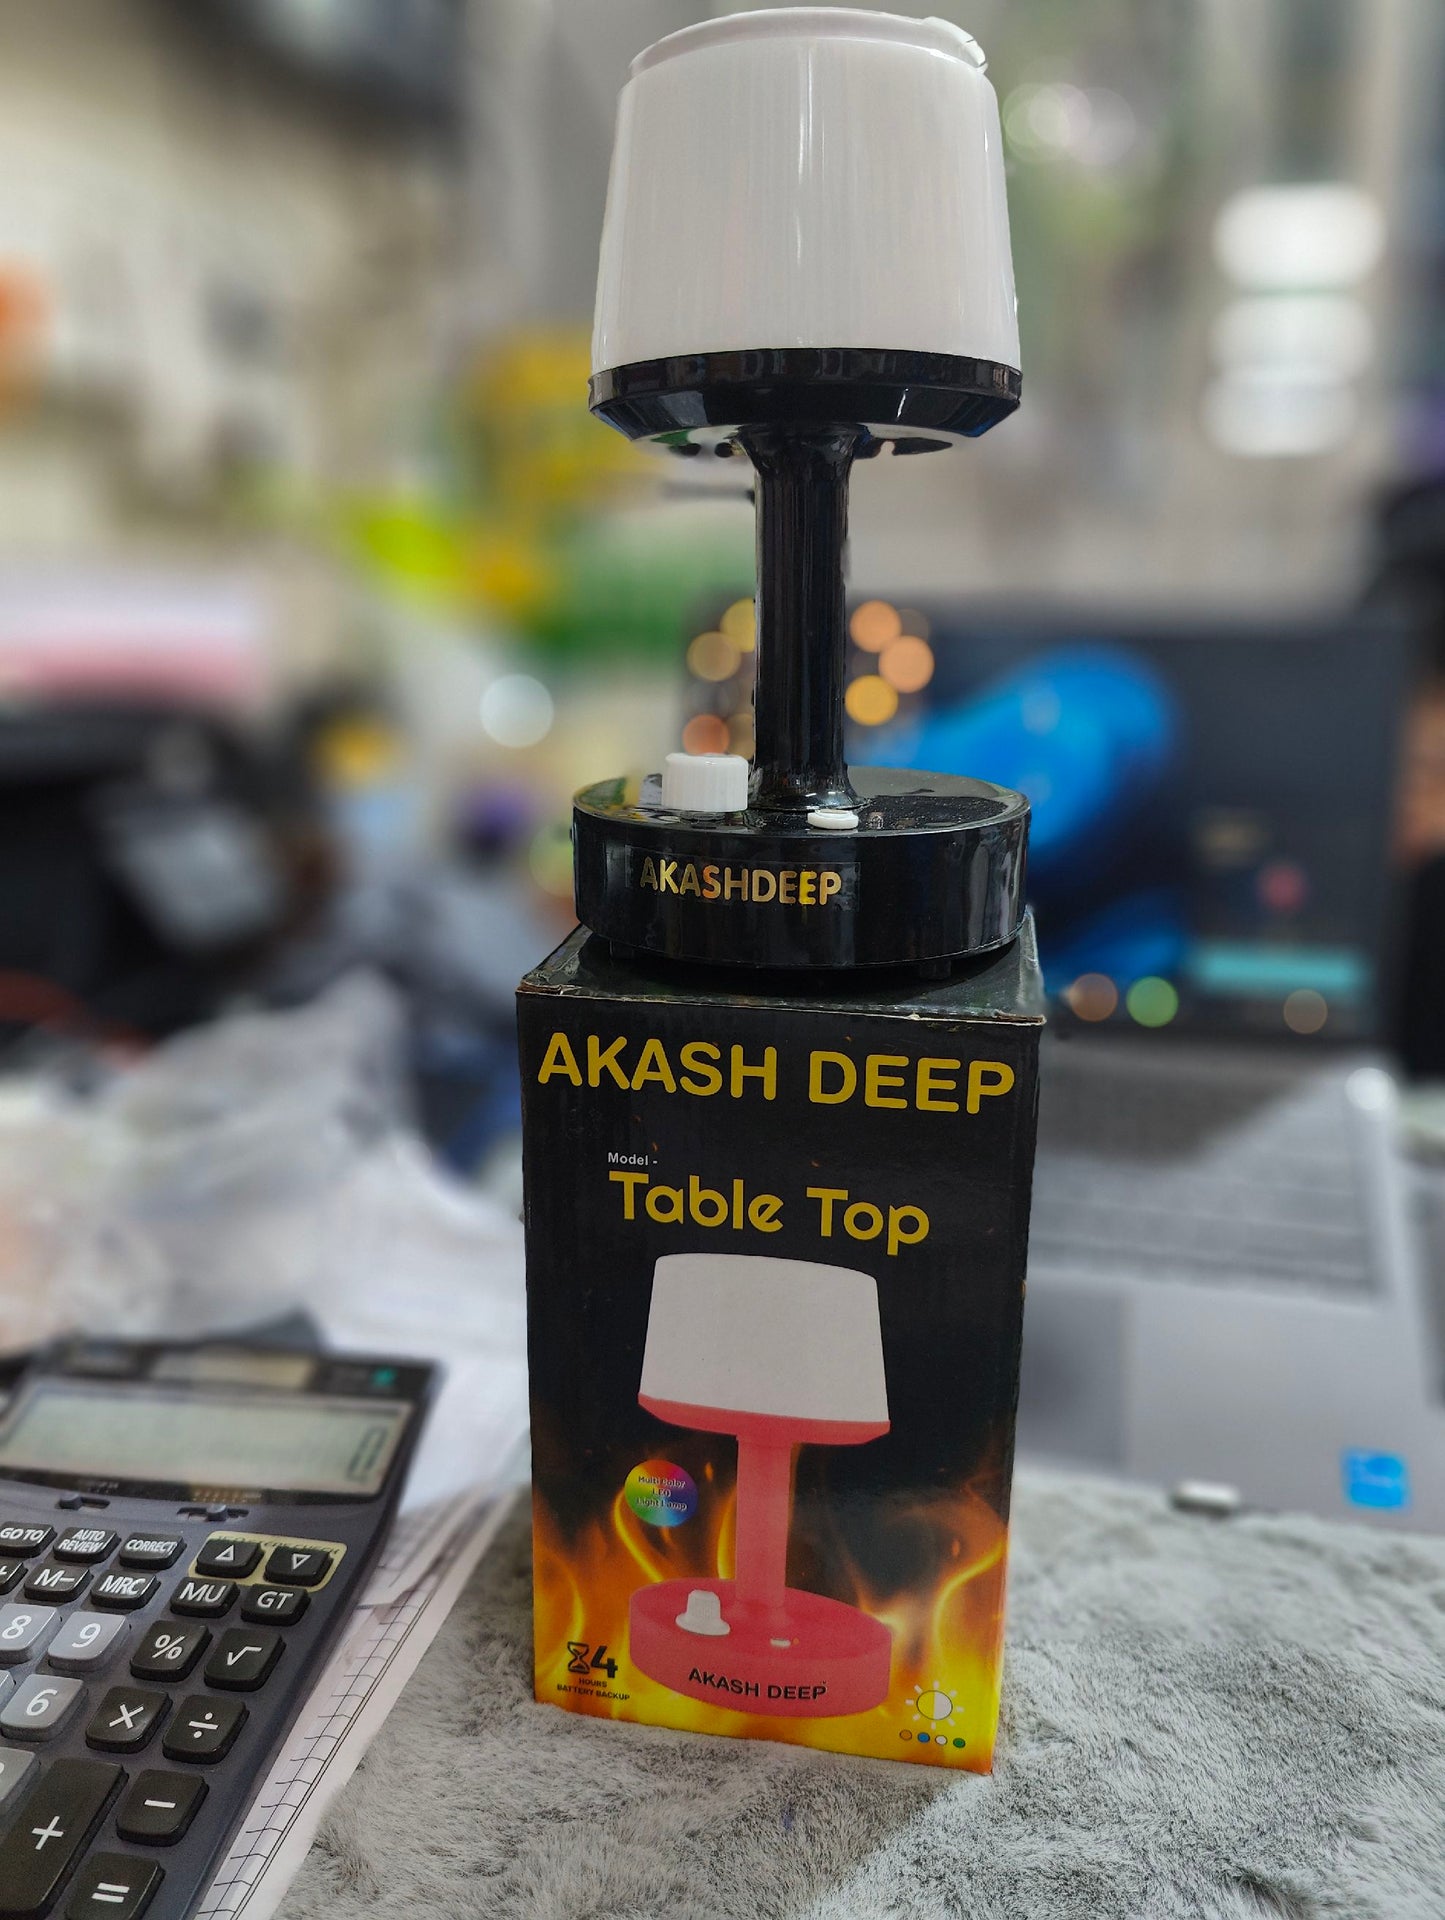 AKASH DEEP TABLE TOP LAMP